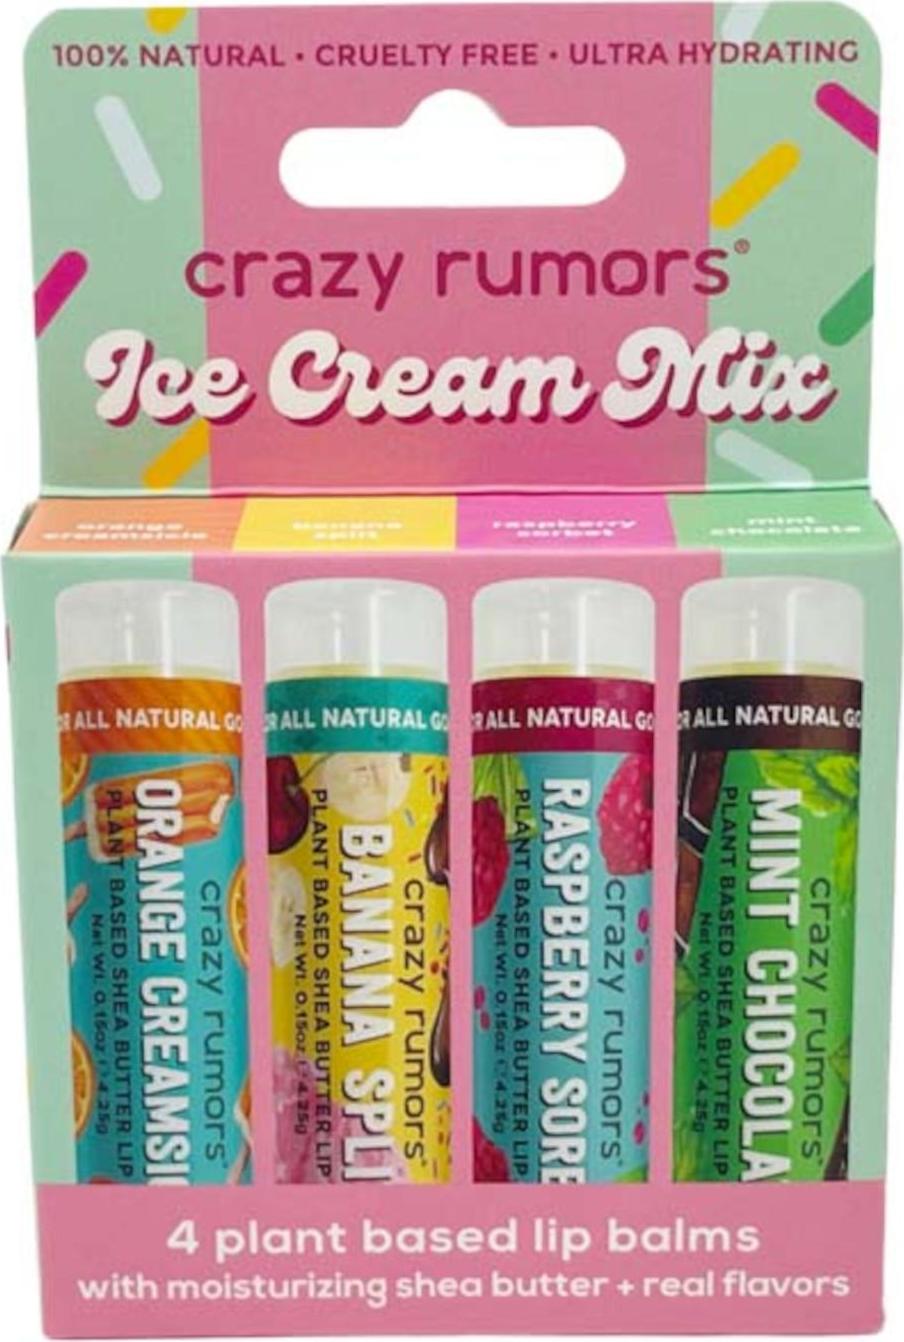 Crazy Rumors Ice Cream Mix 4 x 4